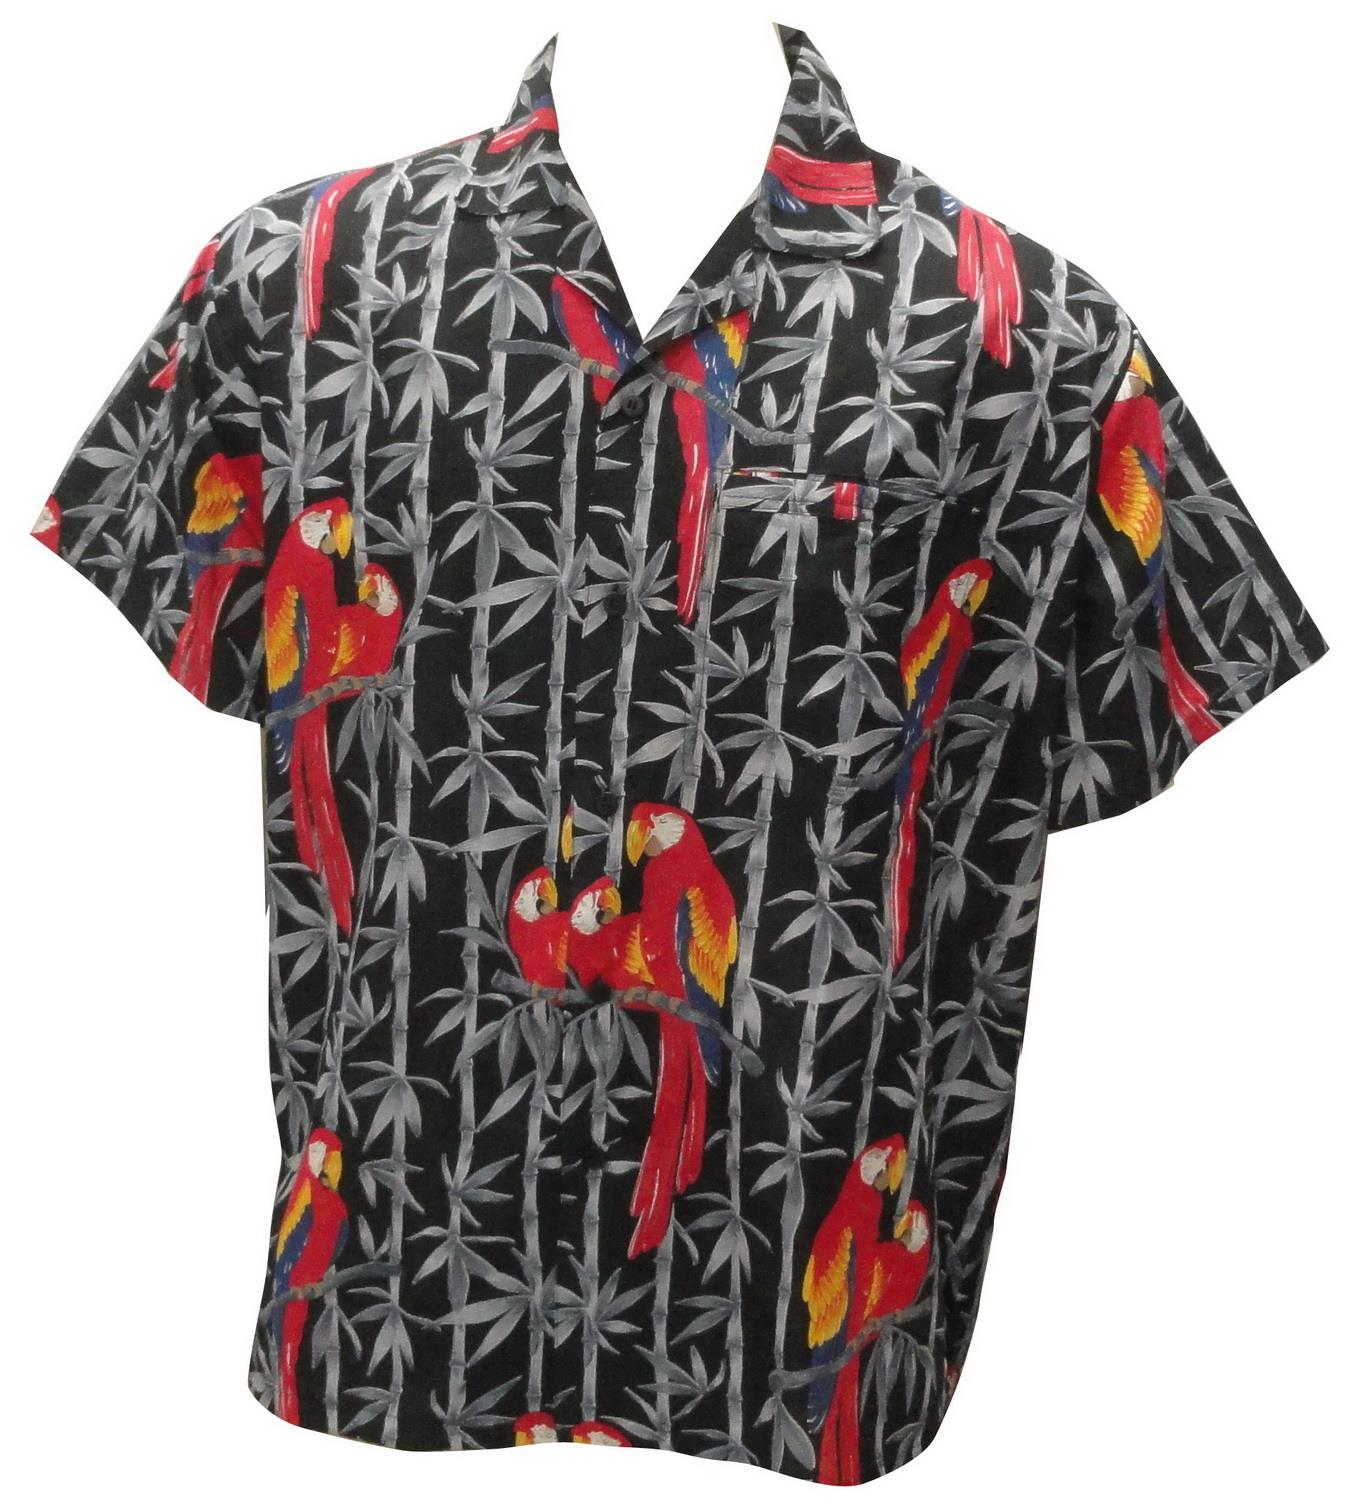 La Leela 100% Cotton Grey Parrot Printed Hawaiian Shirt For Men 3XL